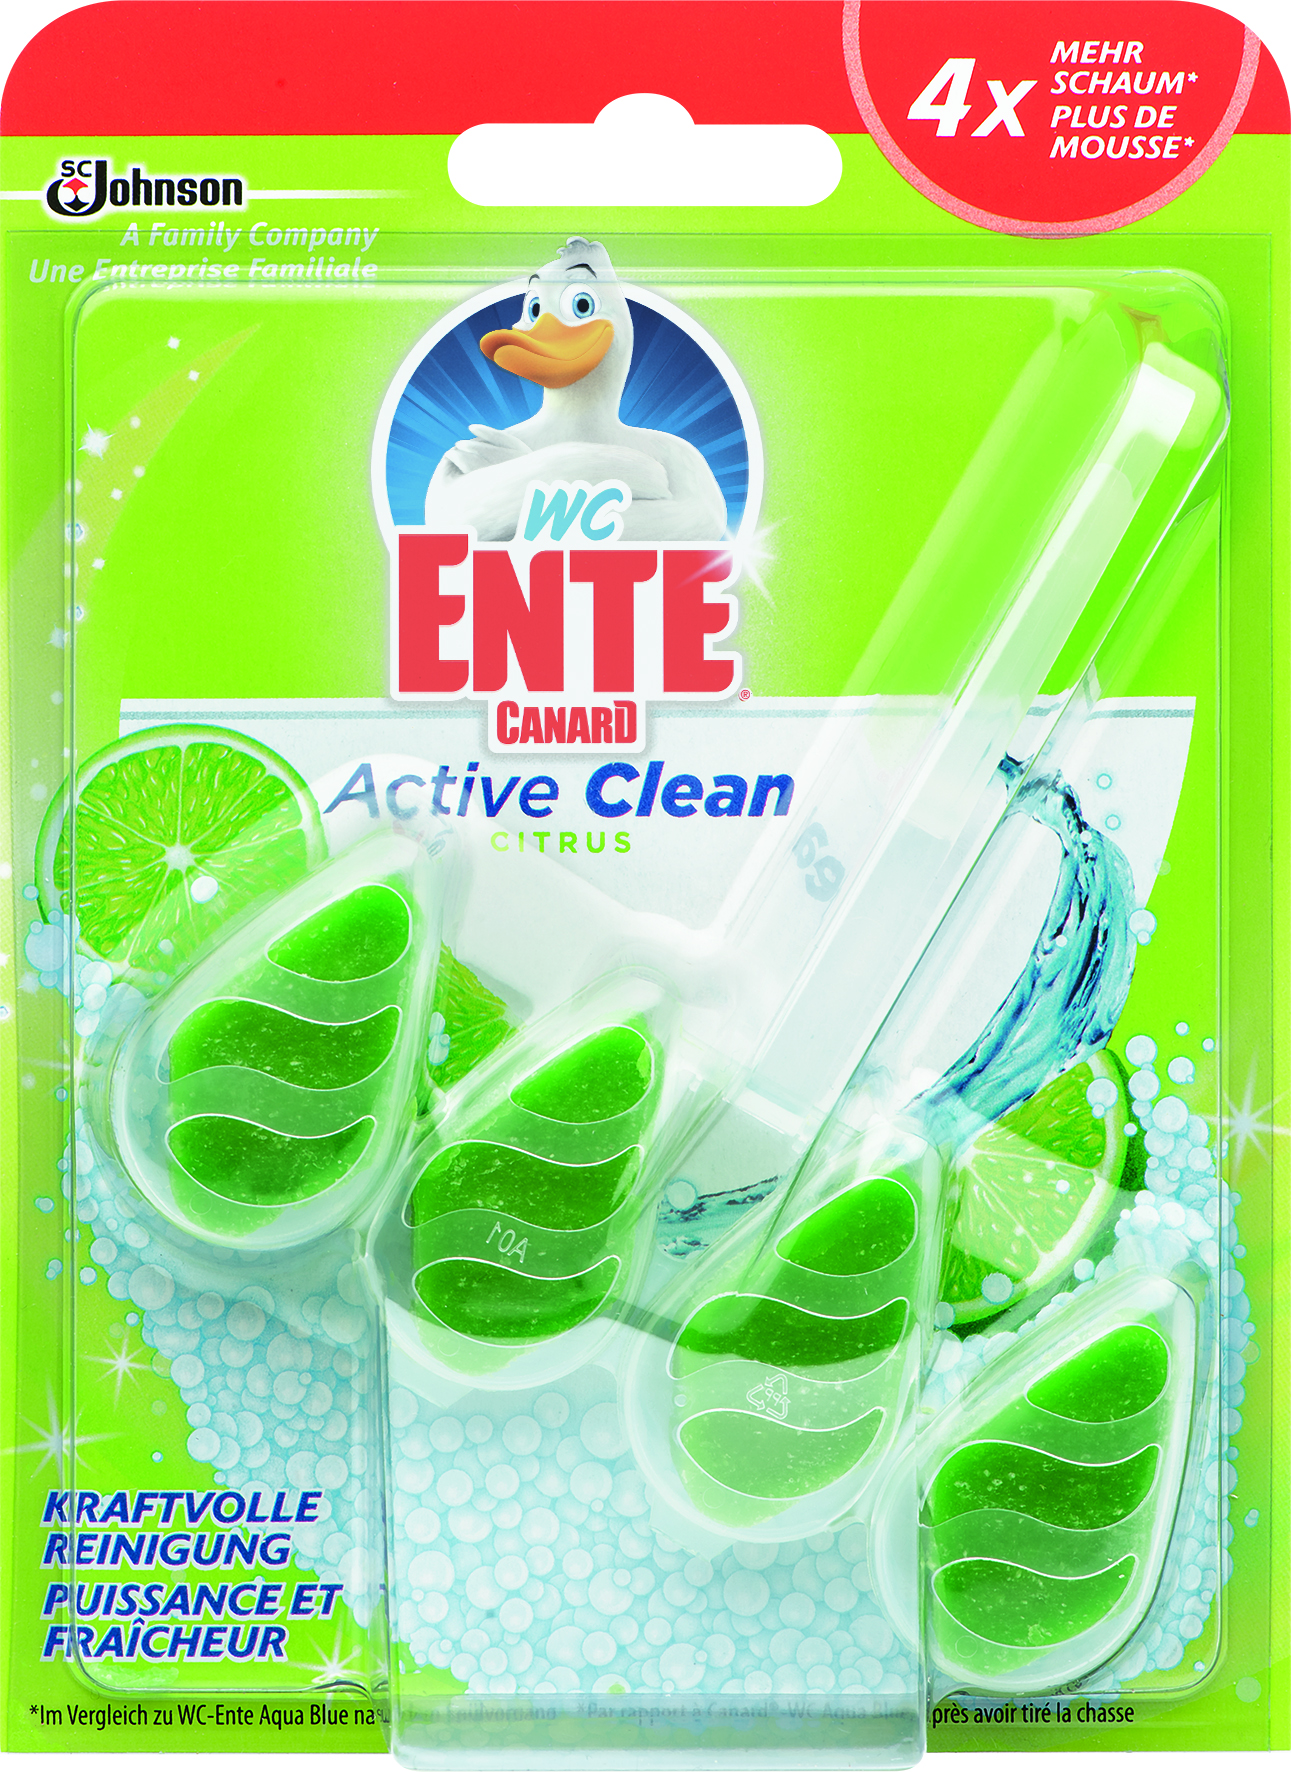 WC-Ente® Active Clean Citrus